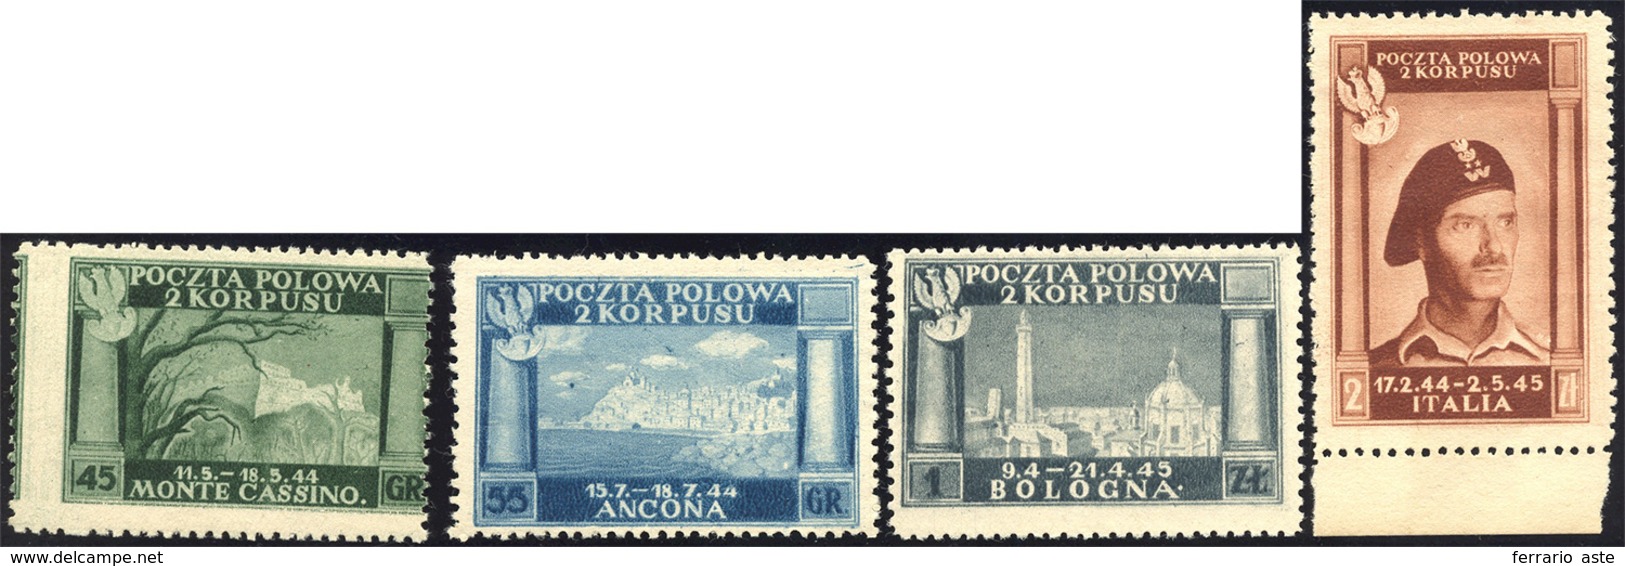 1538 1946 - Vittorie Polacche, Carta Bianca (5/8), Senza Gomma Come Sempre, Perfetti.... - 1946-47 Zeitraum Corpo Polacco